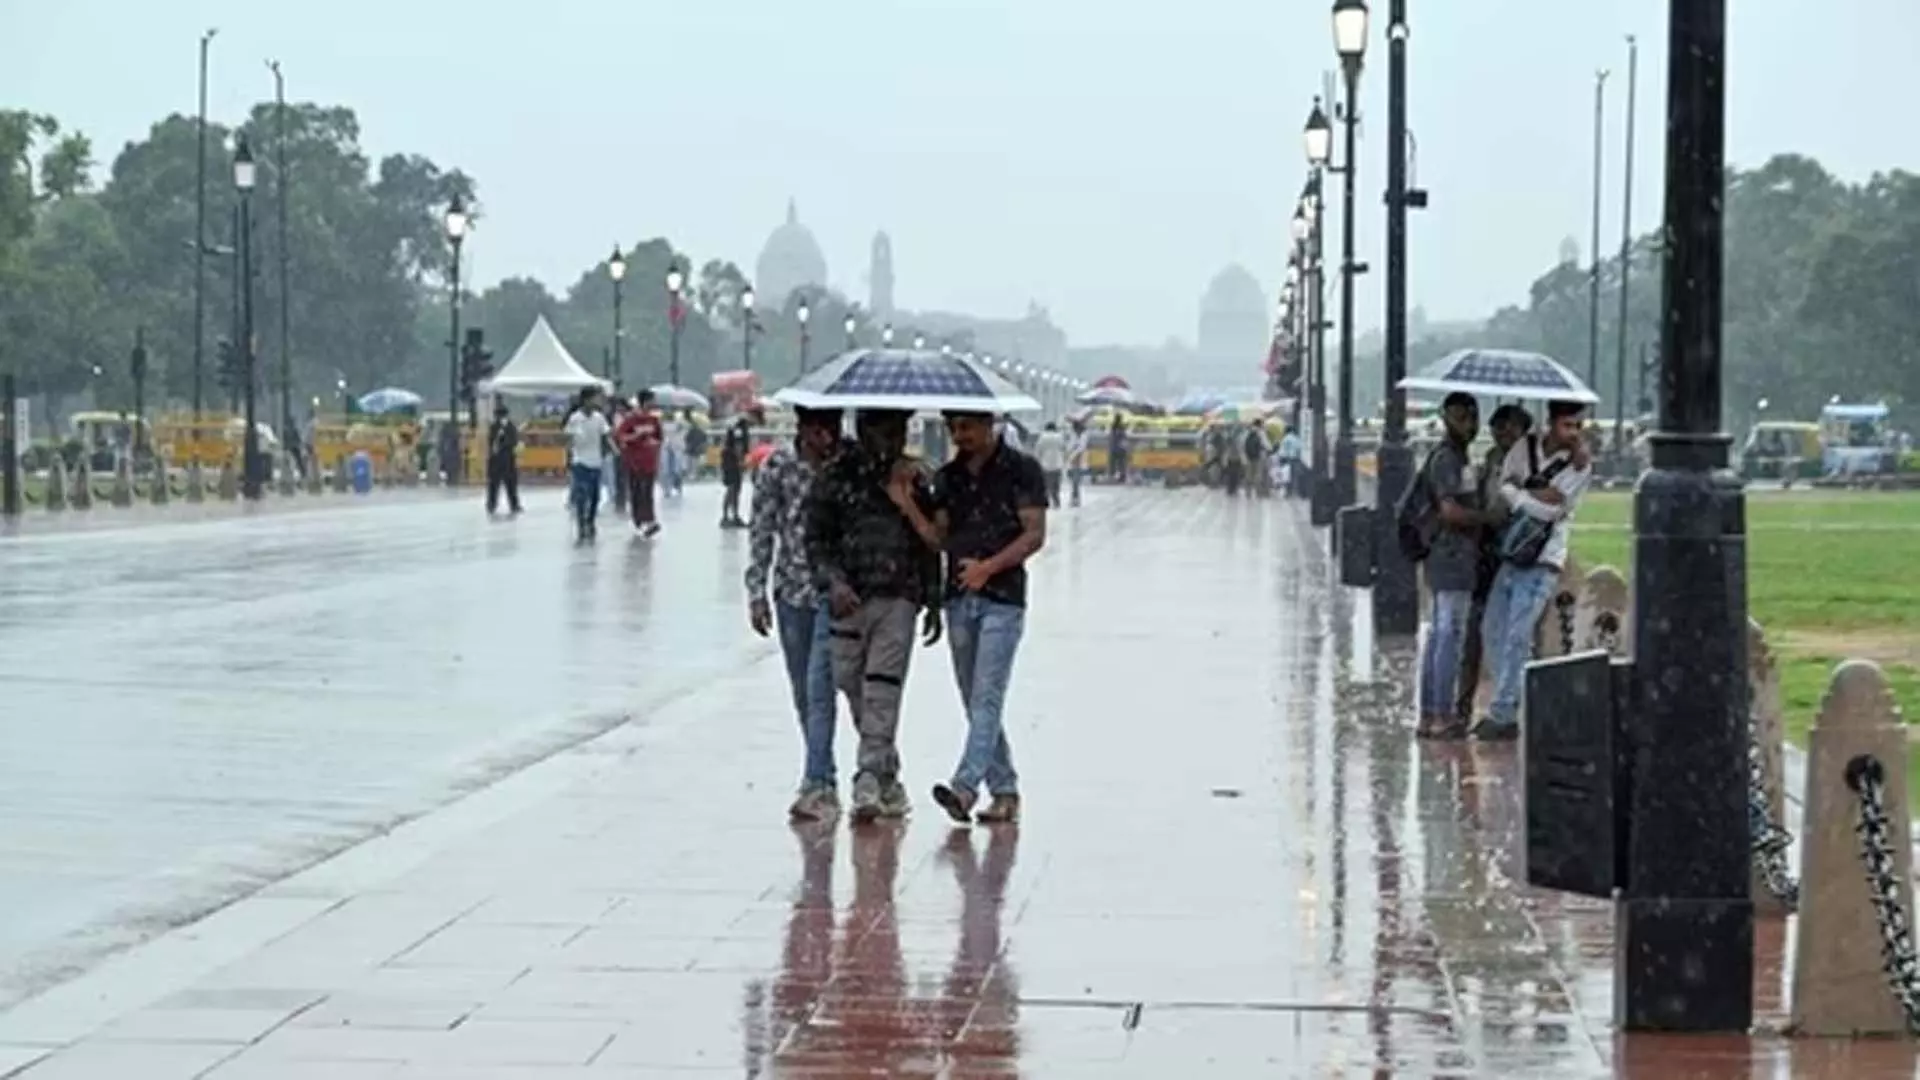 Delhi: दिल्ली में बारिश के बावजूद जुलाई में उमस, अगस्त में कुछ राहत मिलने की संभावना